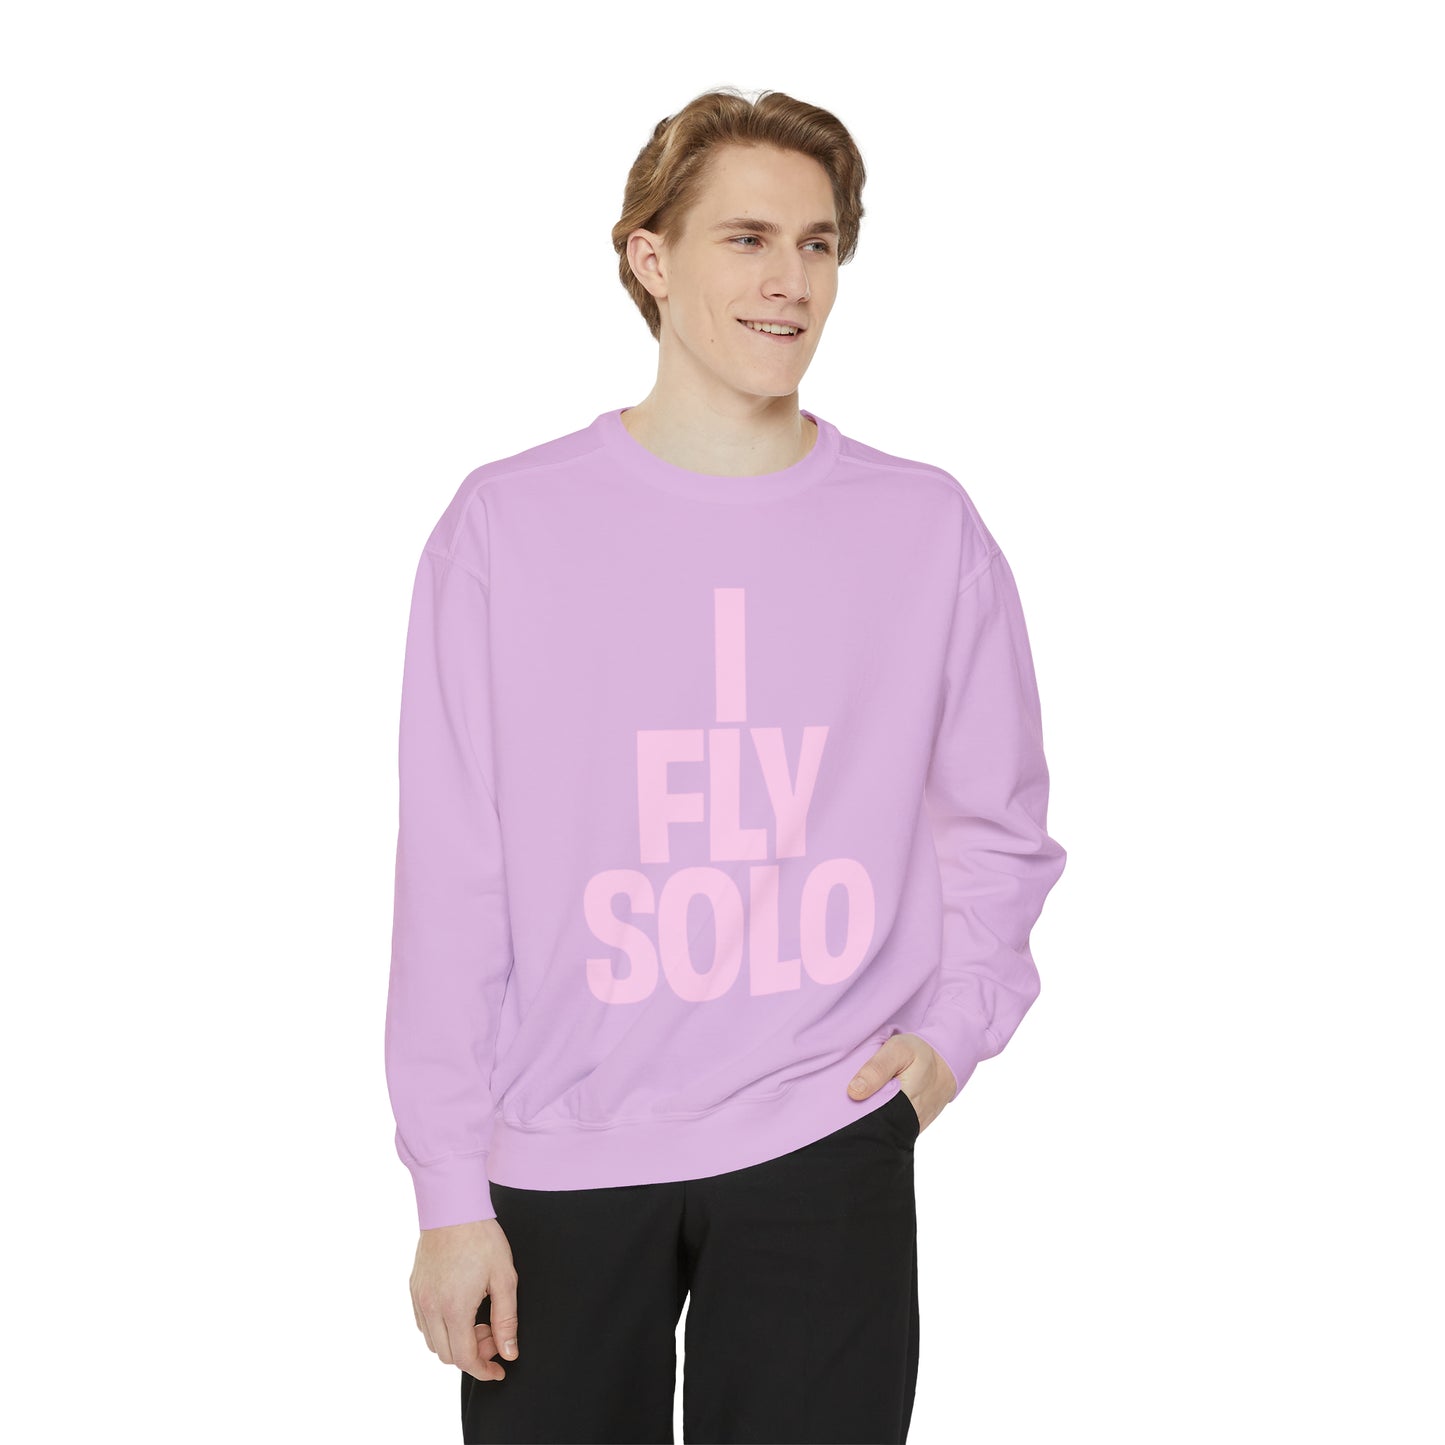 I Fly Solo Unisex Sweatshirt